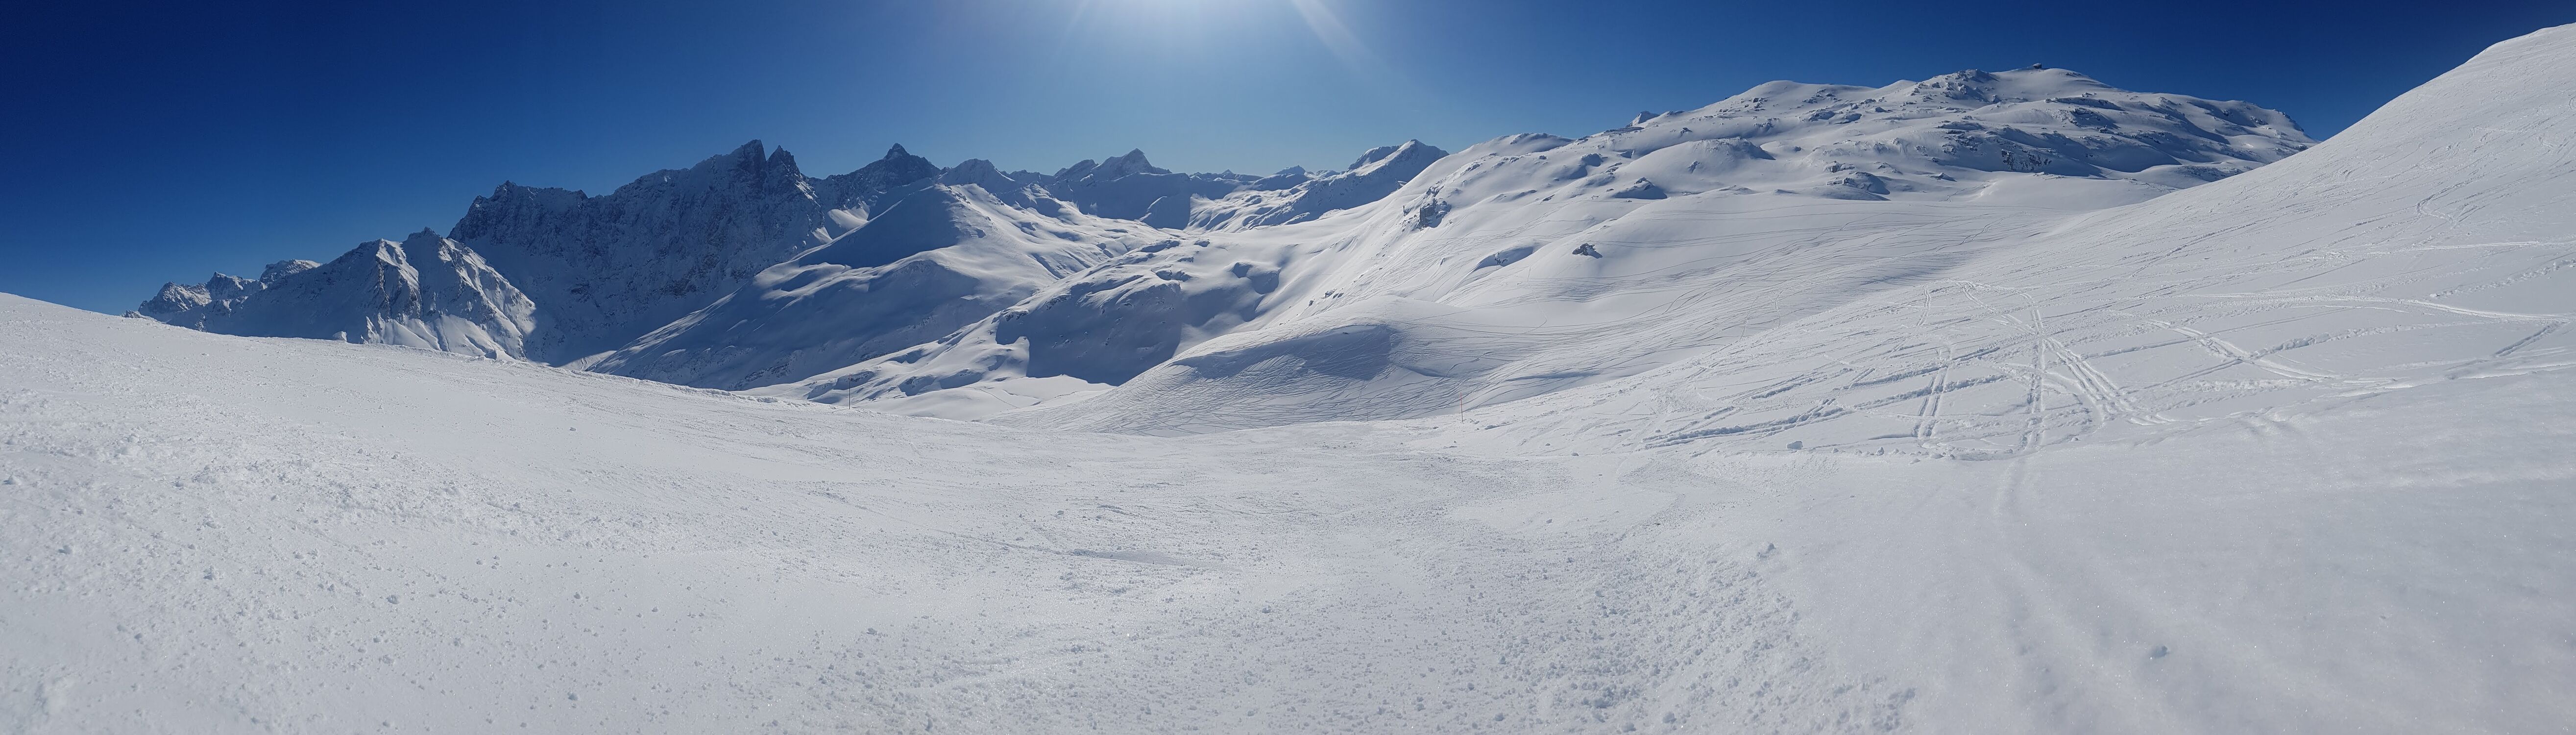 Bild mit Berge, Schnee, Alpen, Alpen Panorama, winterlandschaft, Schneelandschaften